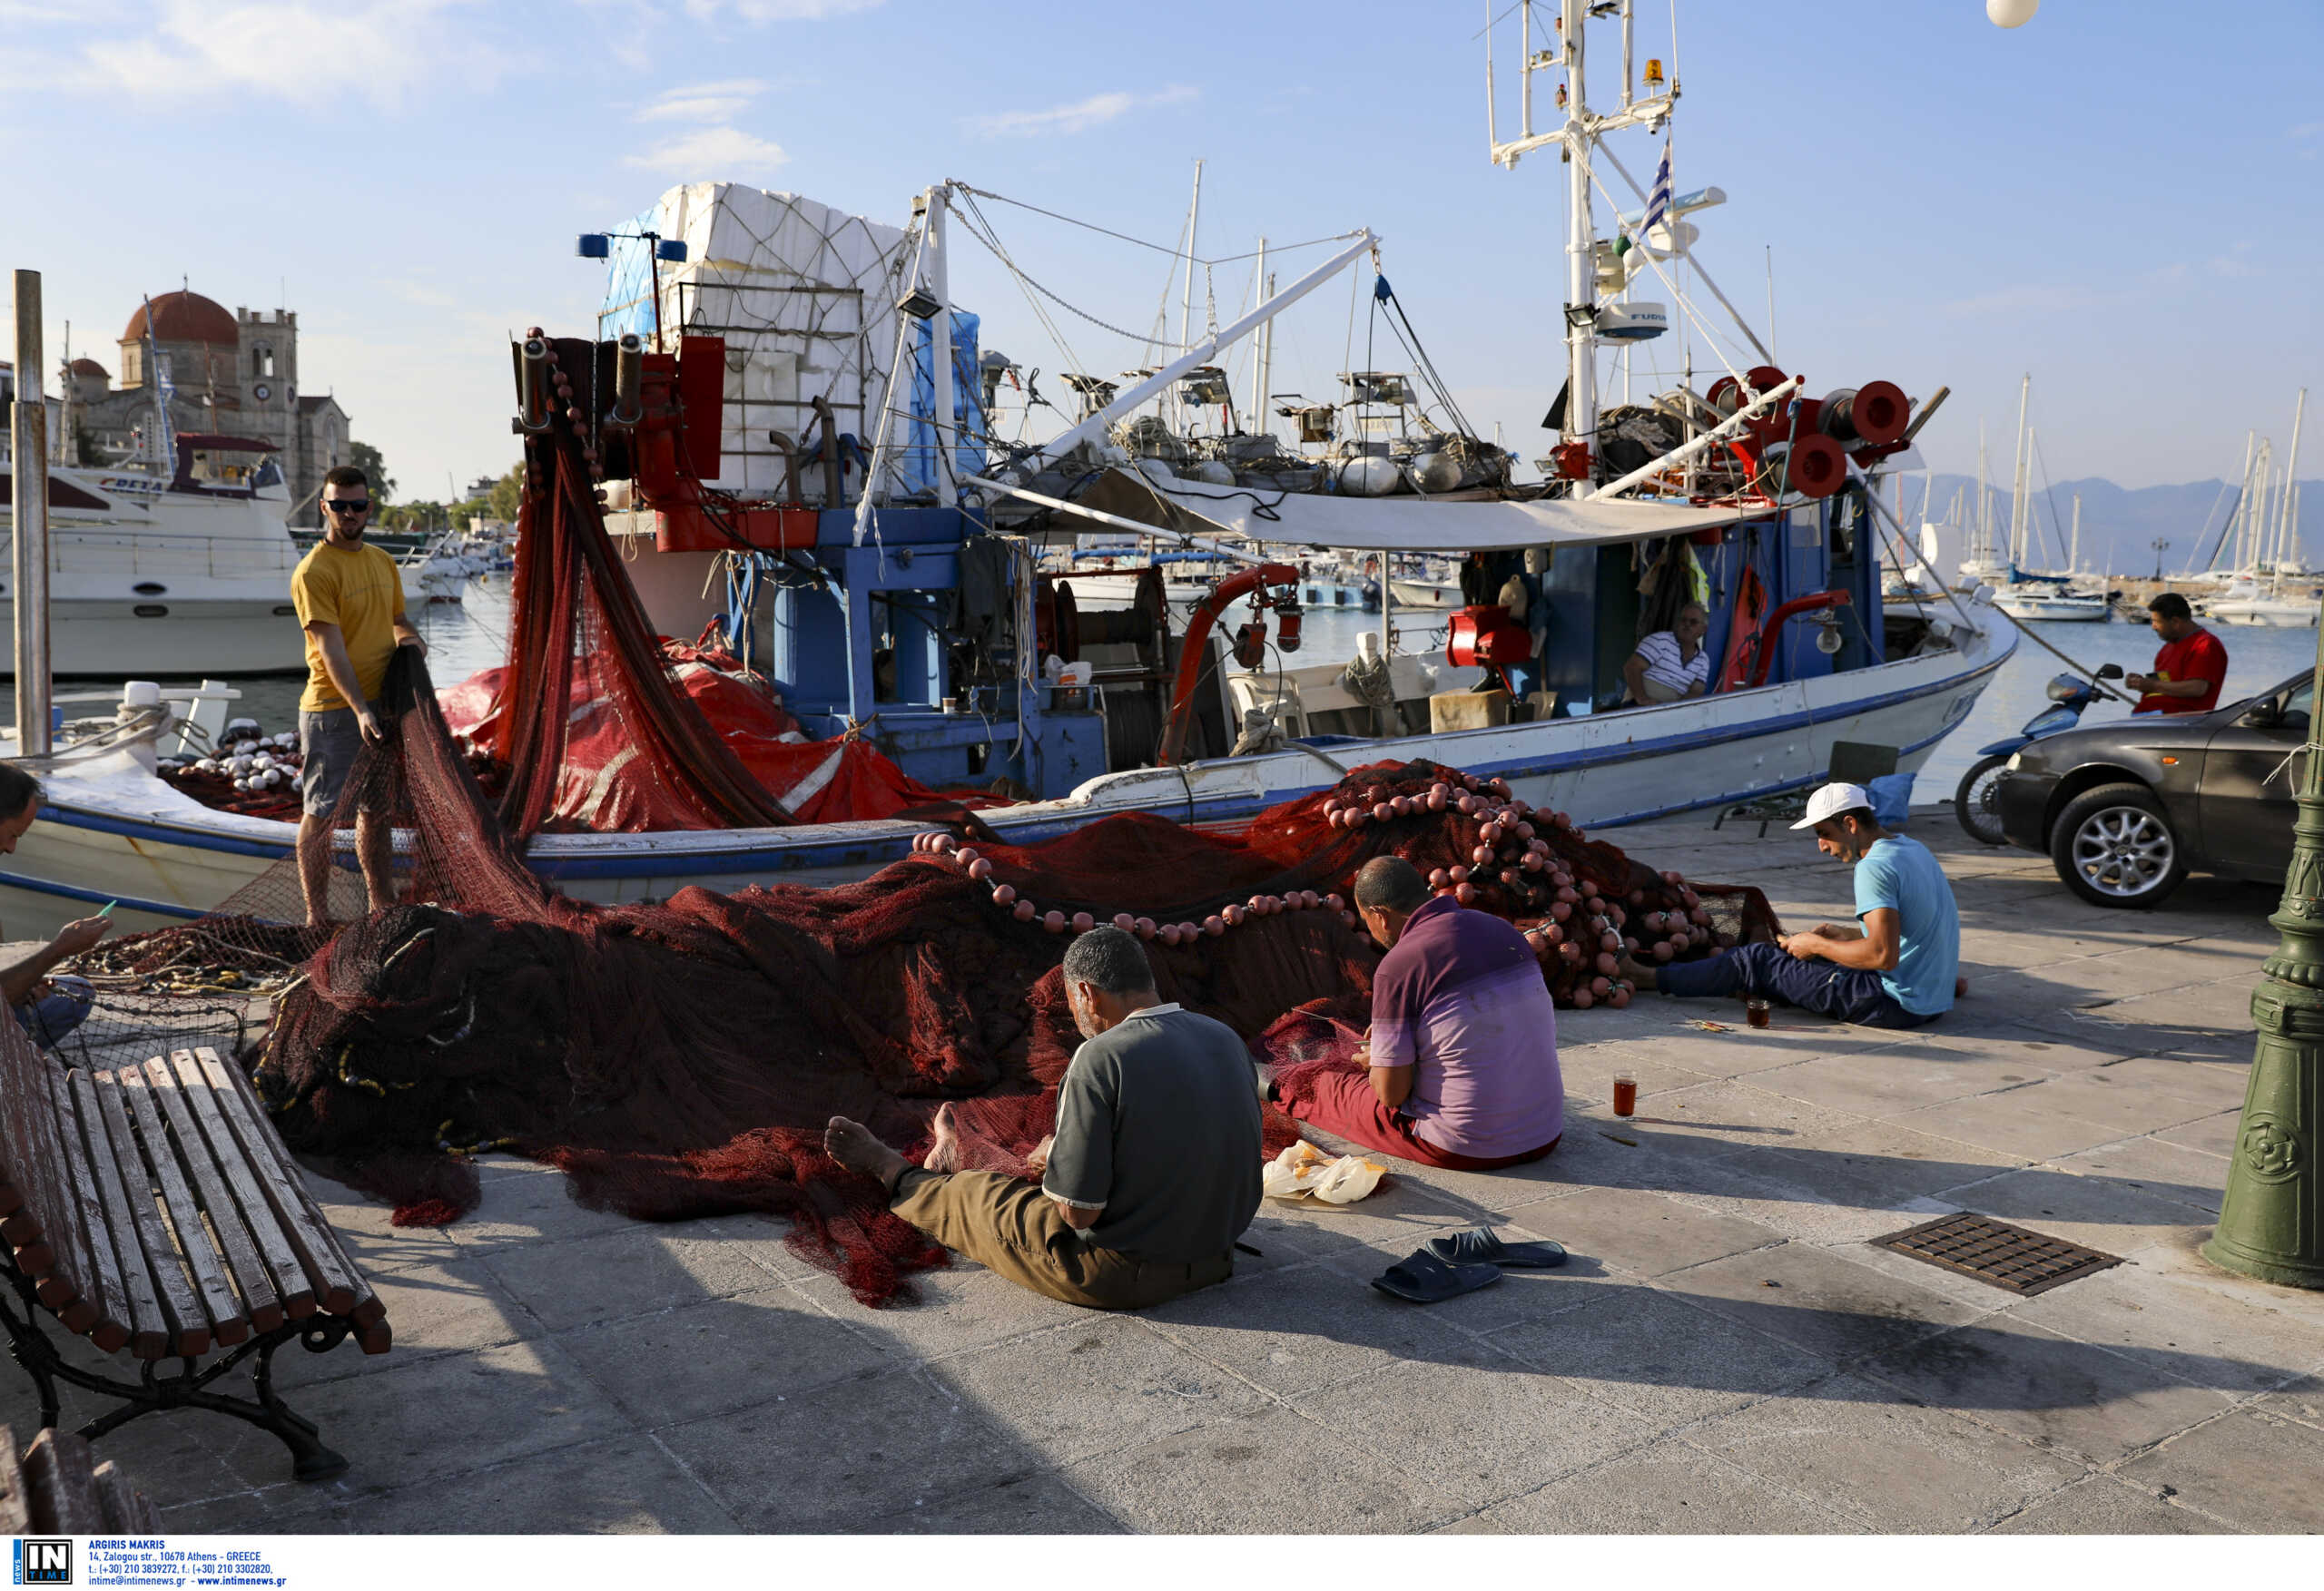 Χίος: Βρέθηκε μαχαιρωμένος μέσα σε βάρκα στην ιχθυόσκαλα